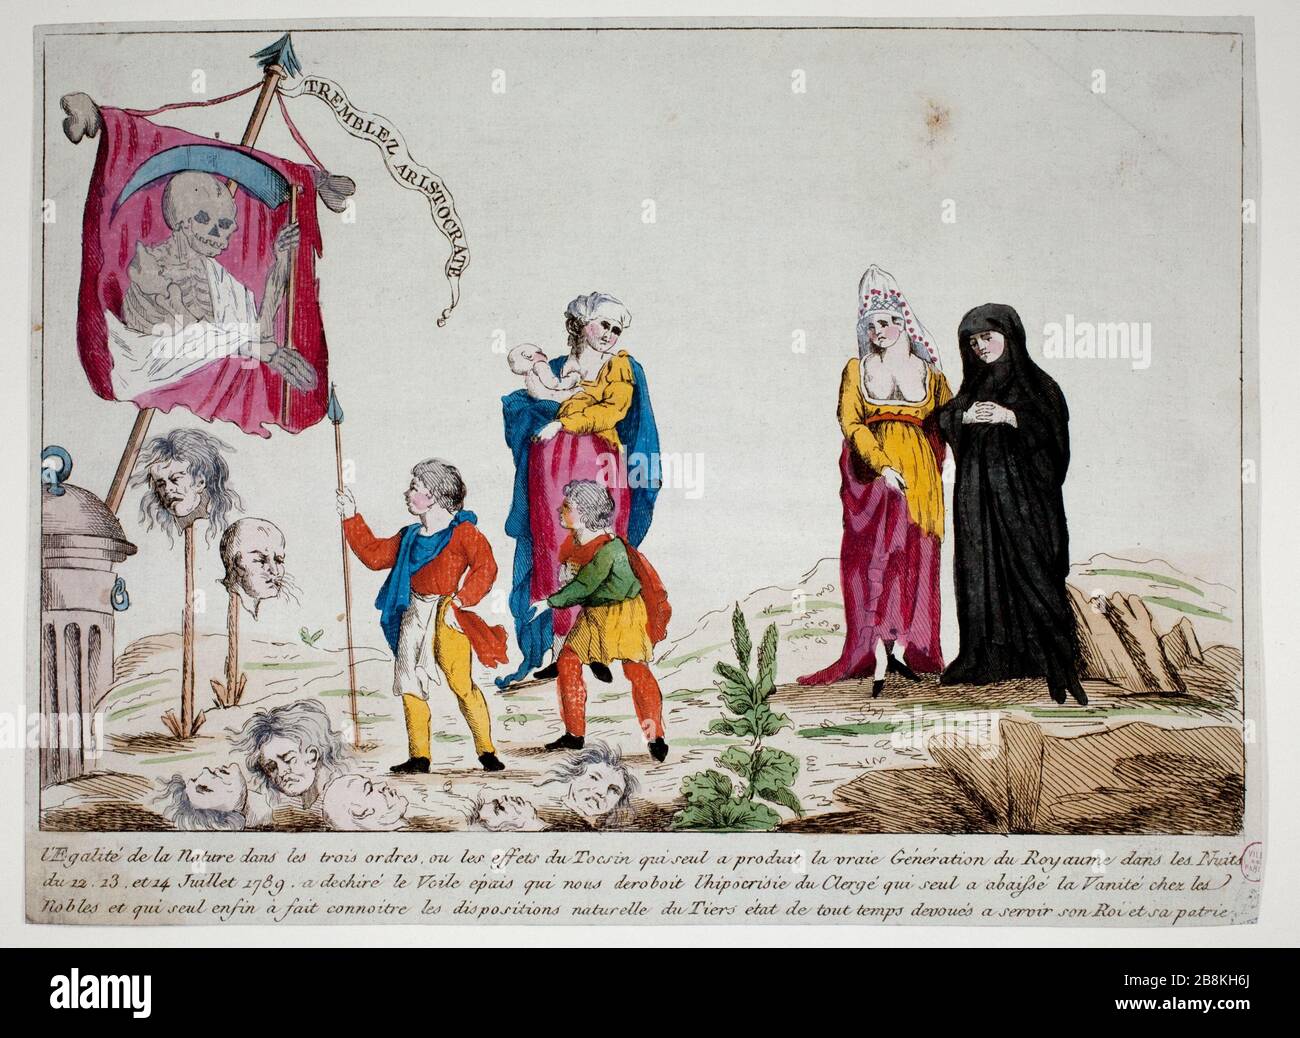 AGITARE L'ARISTOCRATE "Tremblez aristocrate". Anonima gravure. Parigi, musée Carnavalet. Foto Stock